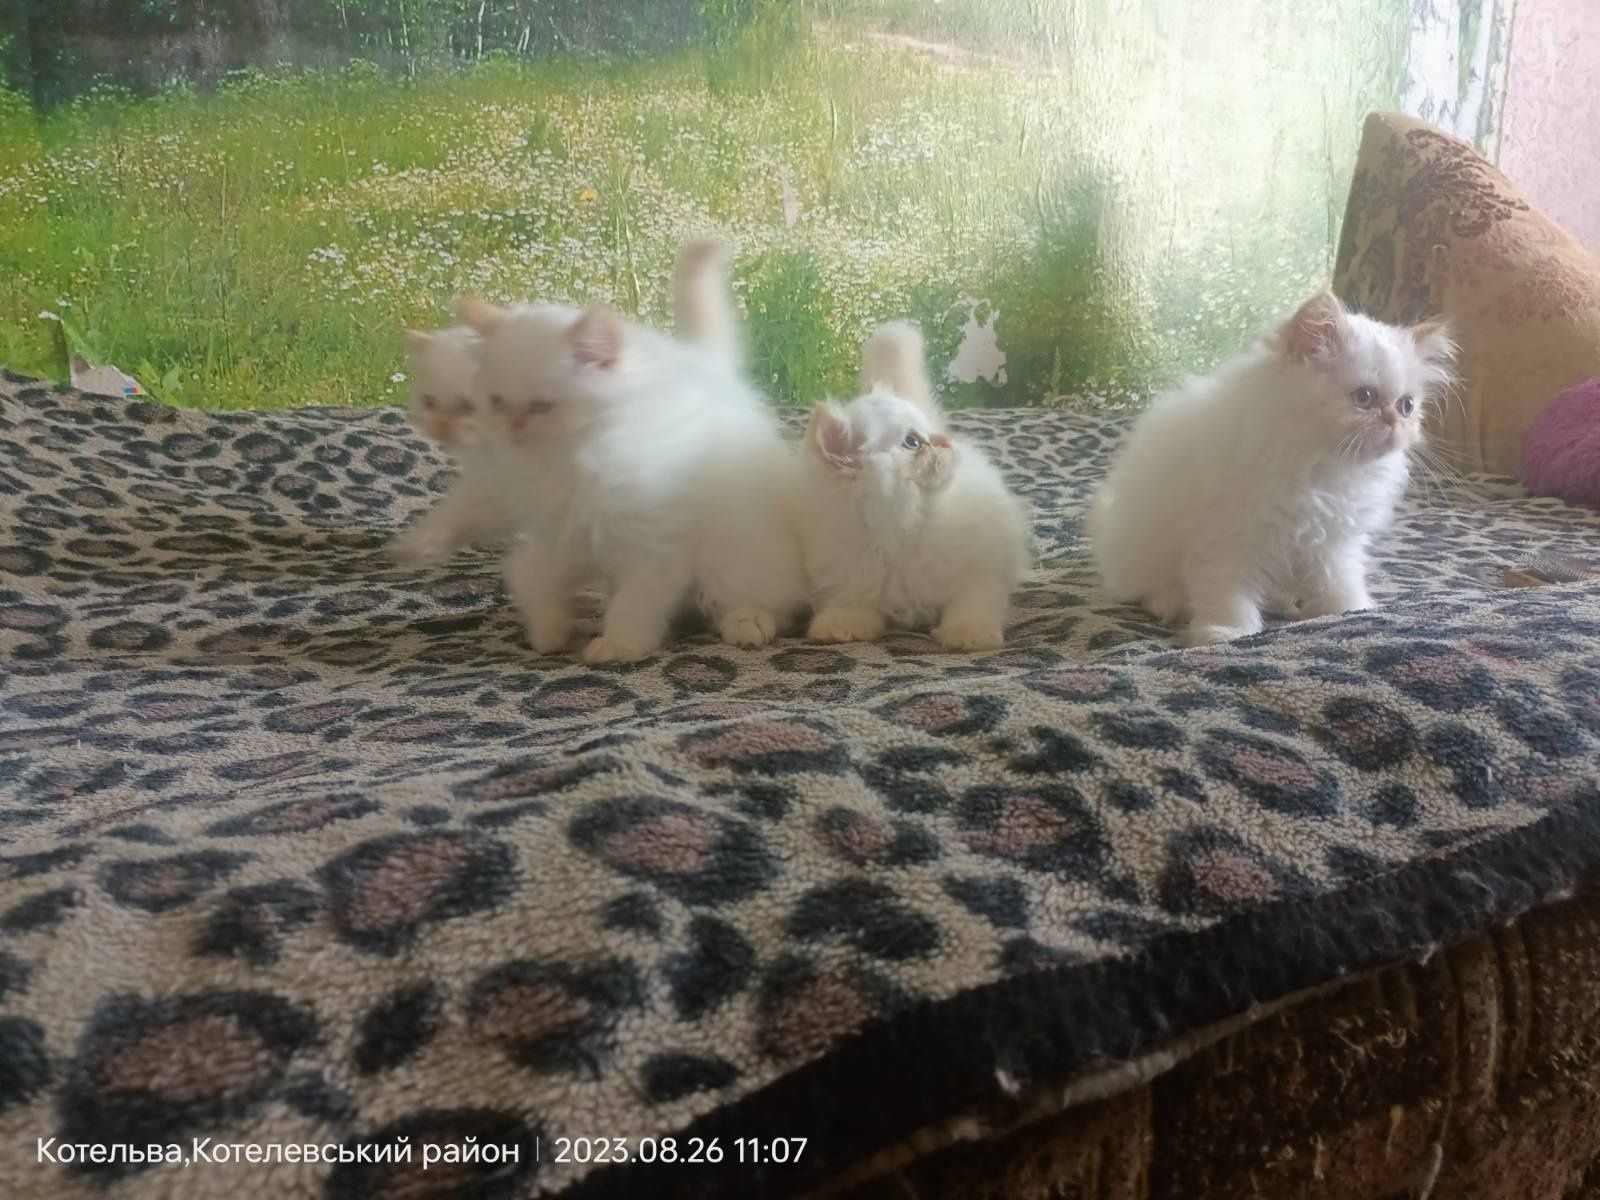 Продам персидських кошенят